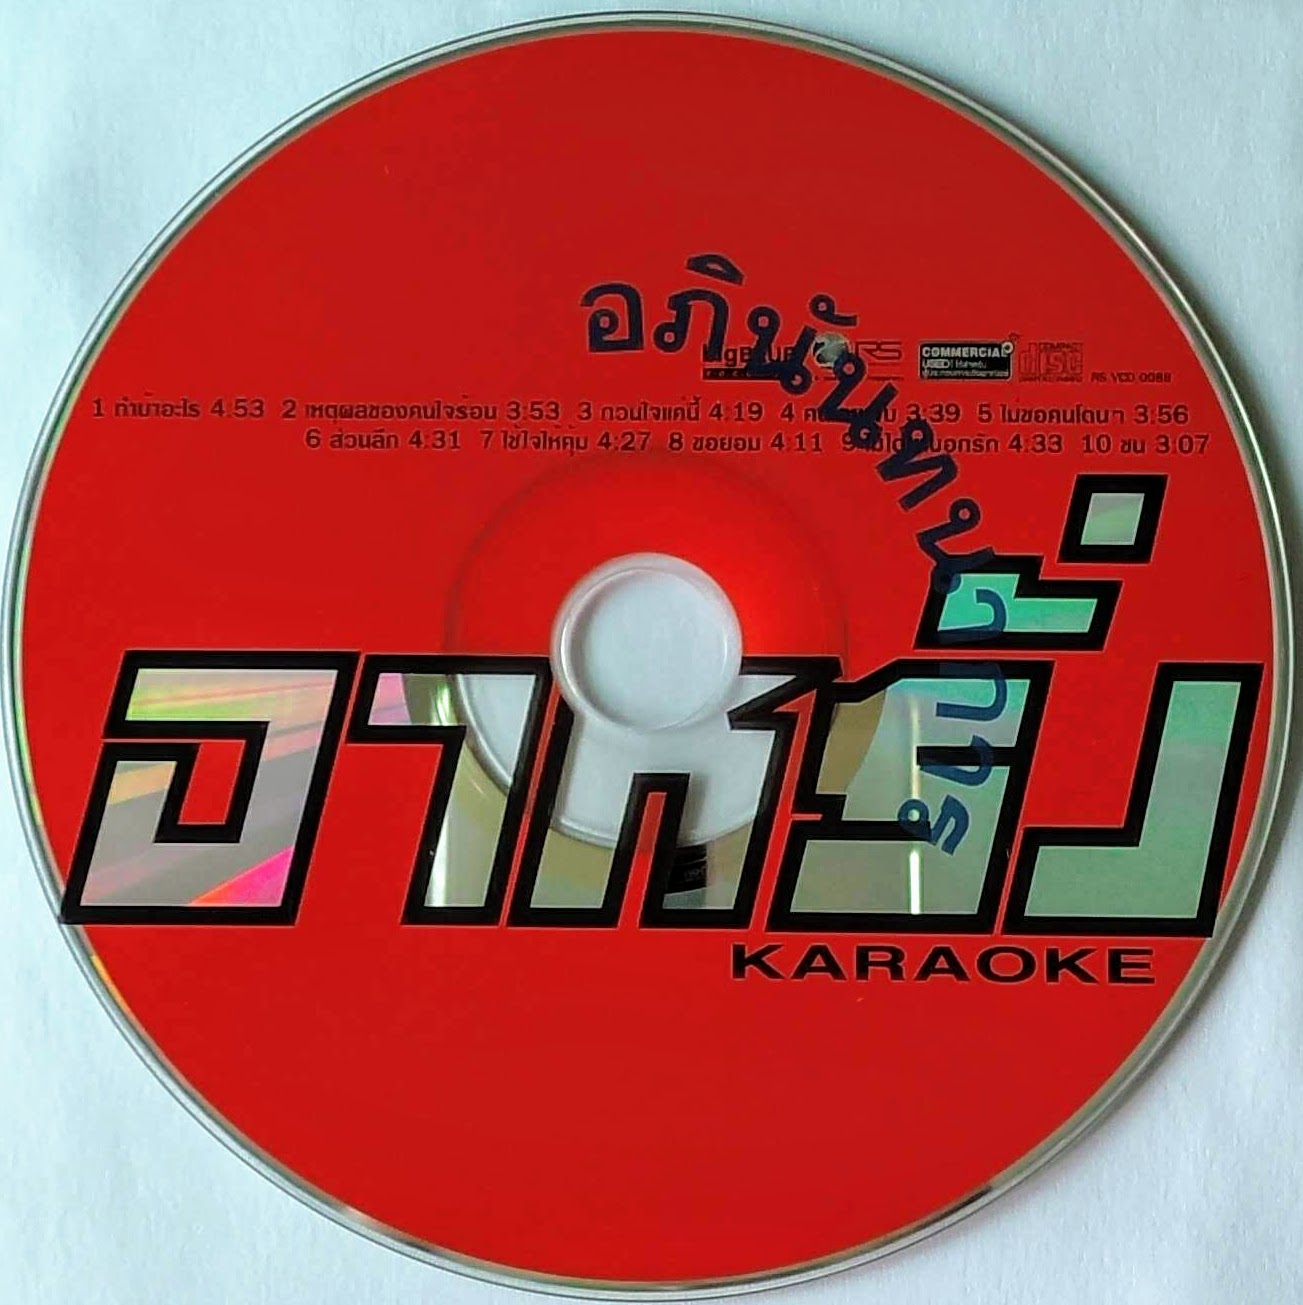 VCD Karaoke (Promotion) อาหรั่ง อัลบั้ม อาหรั่ง (เฉพาะแผ่นซีดี)